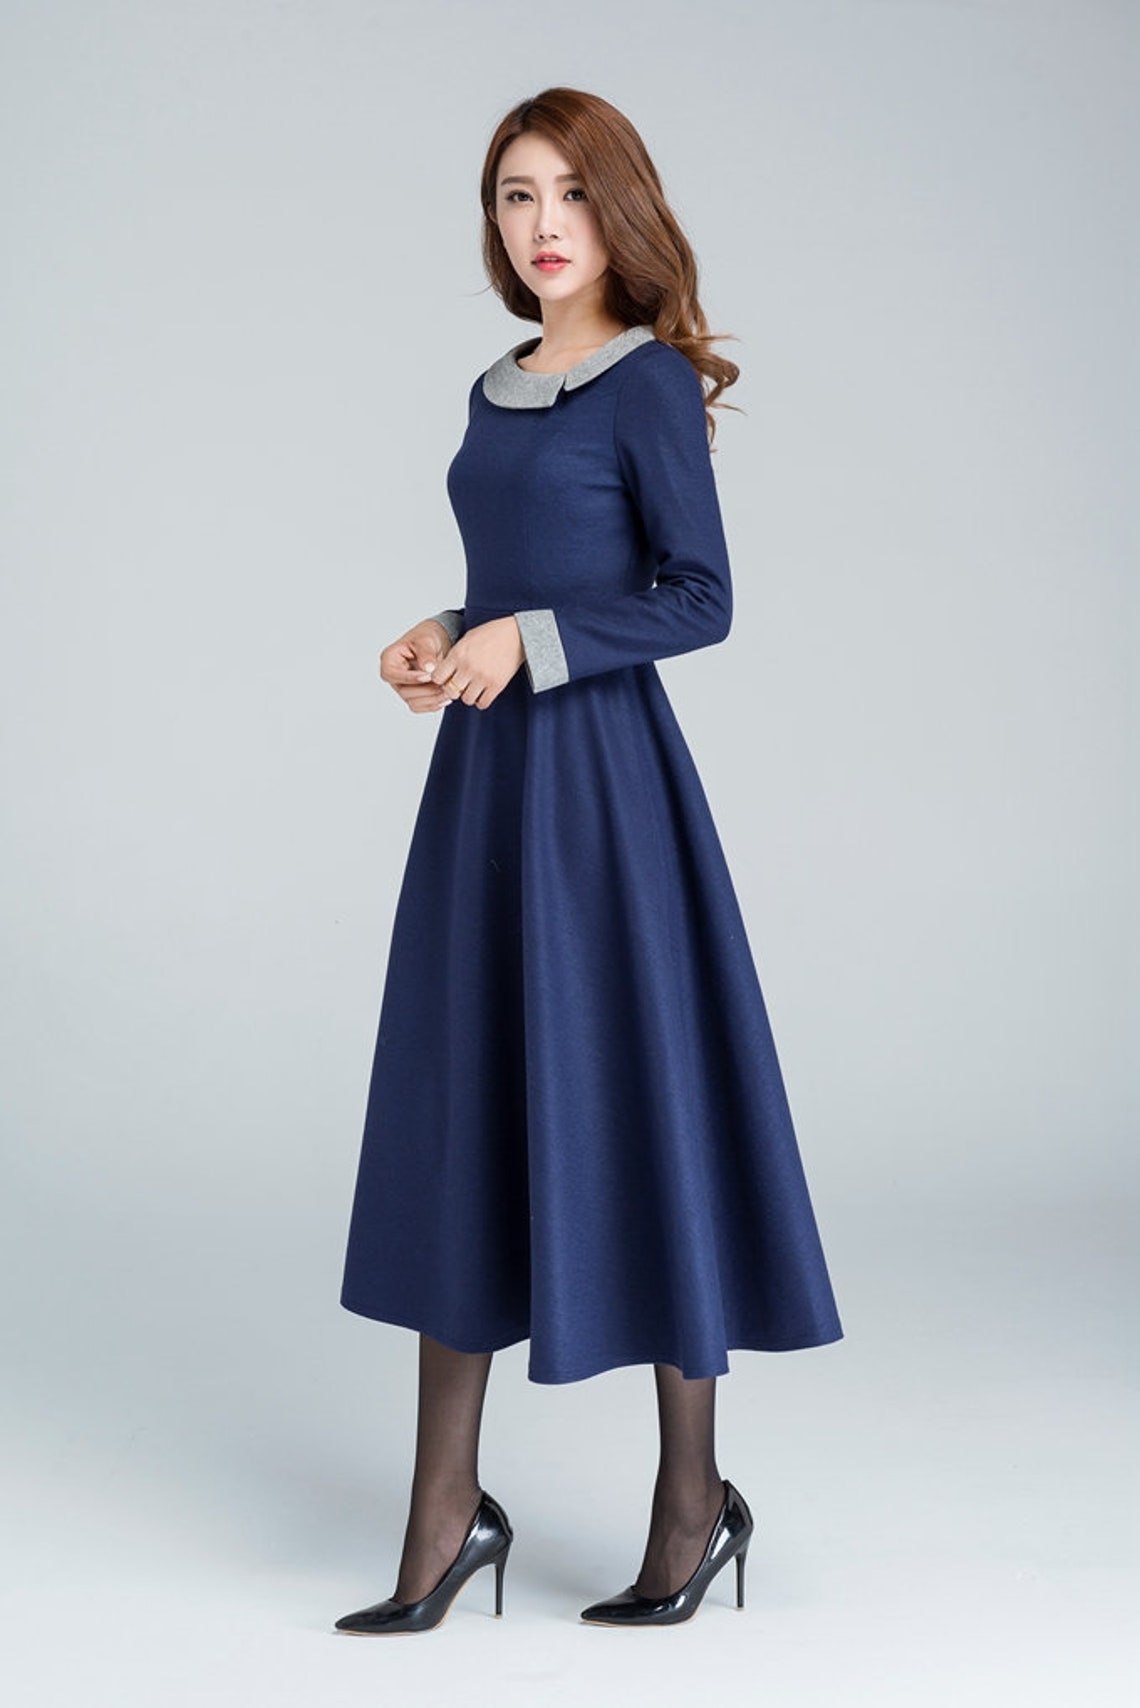 Winter Wool Dress Vintage Long Women Dresses Warm Winter - Etsy UK